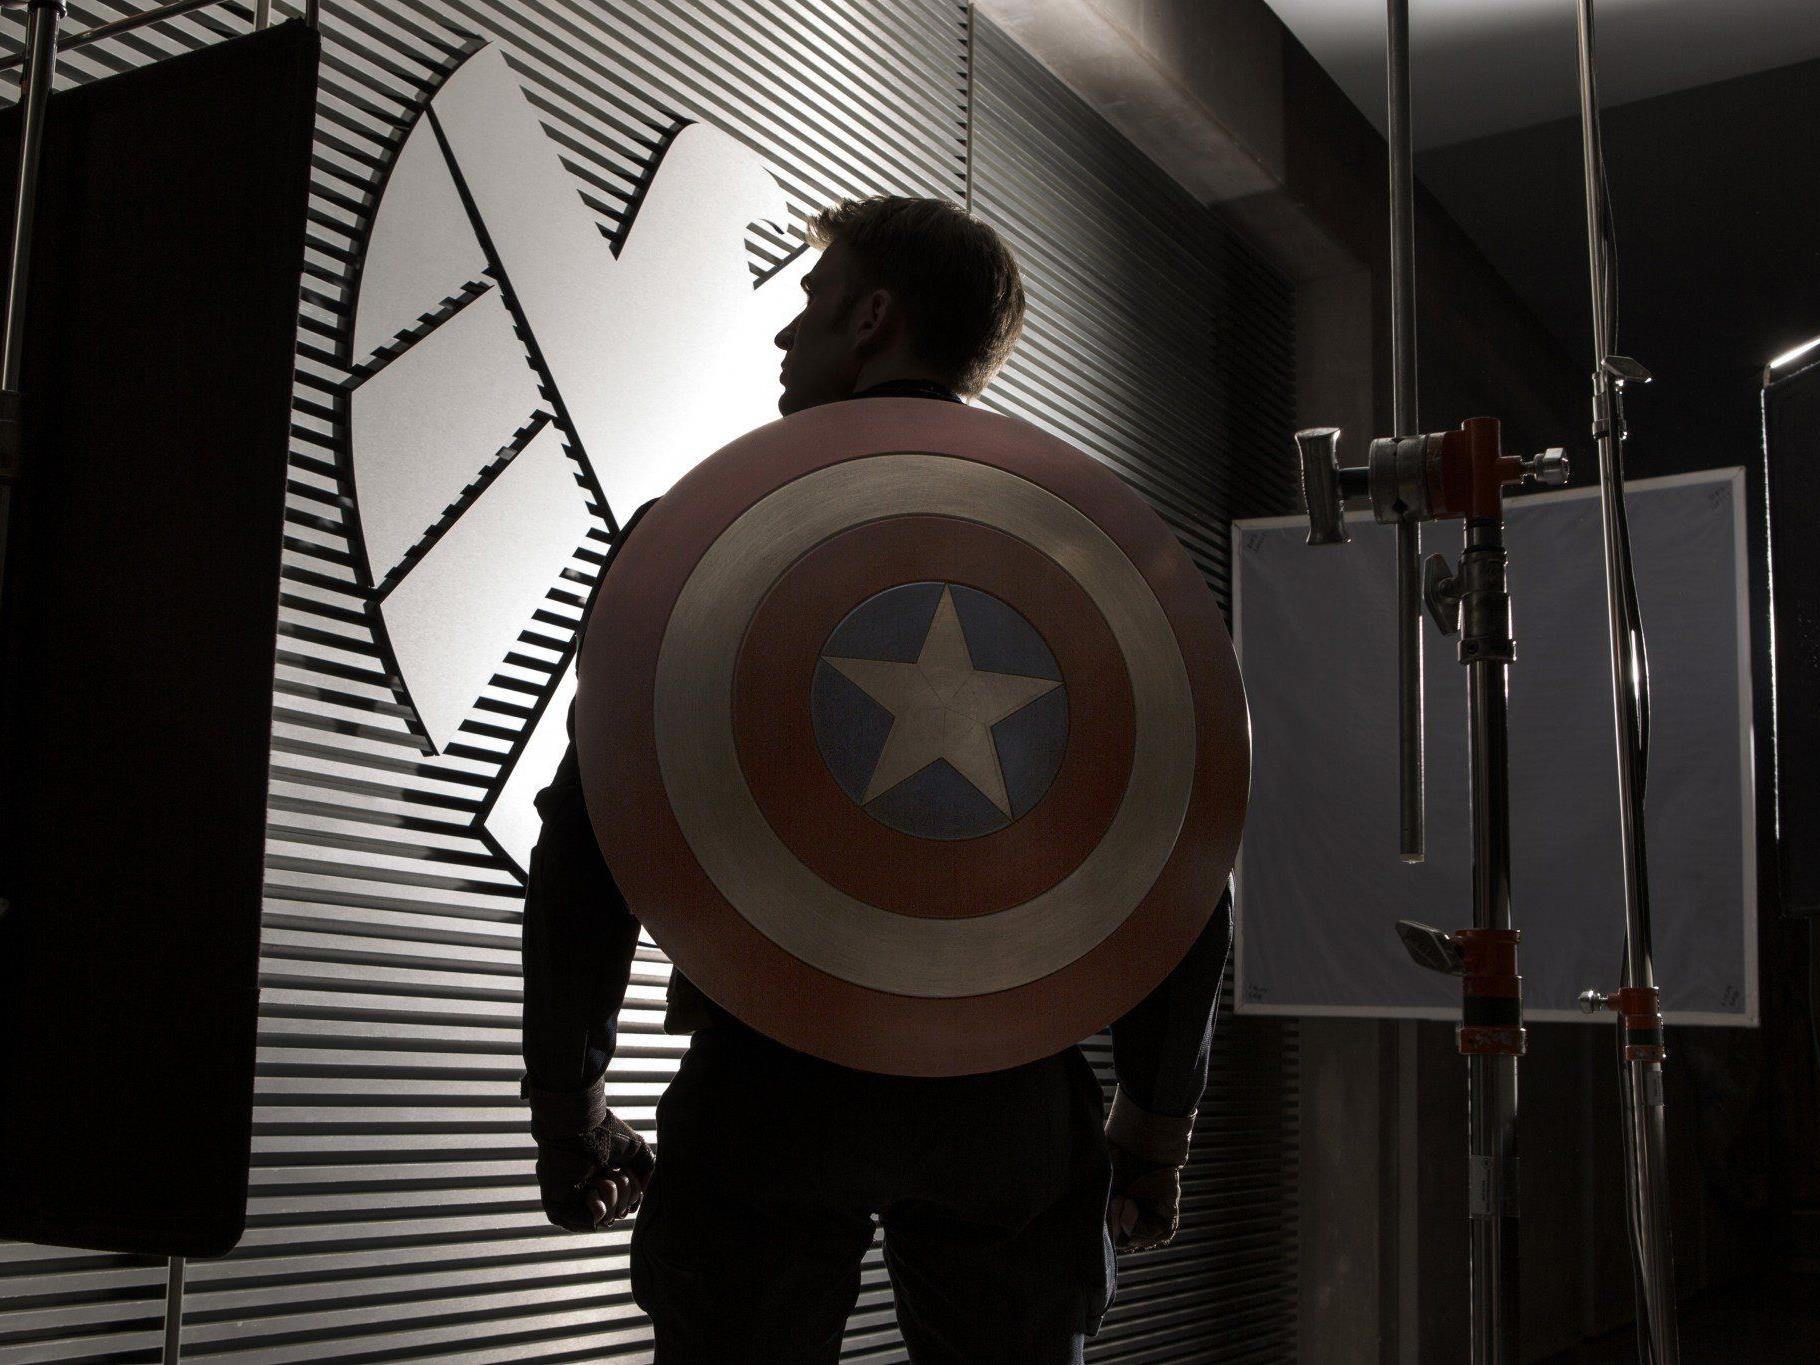 Zweiter Solo-Auftritt für Chris Evans als Captain America ab 27. März im Kino.